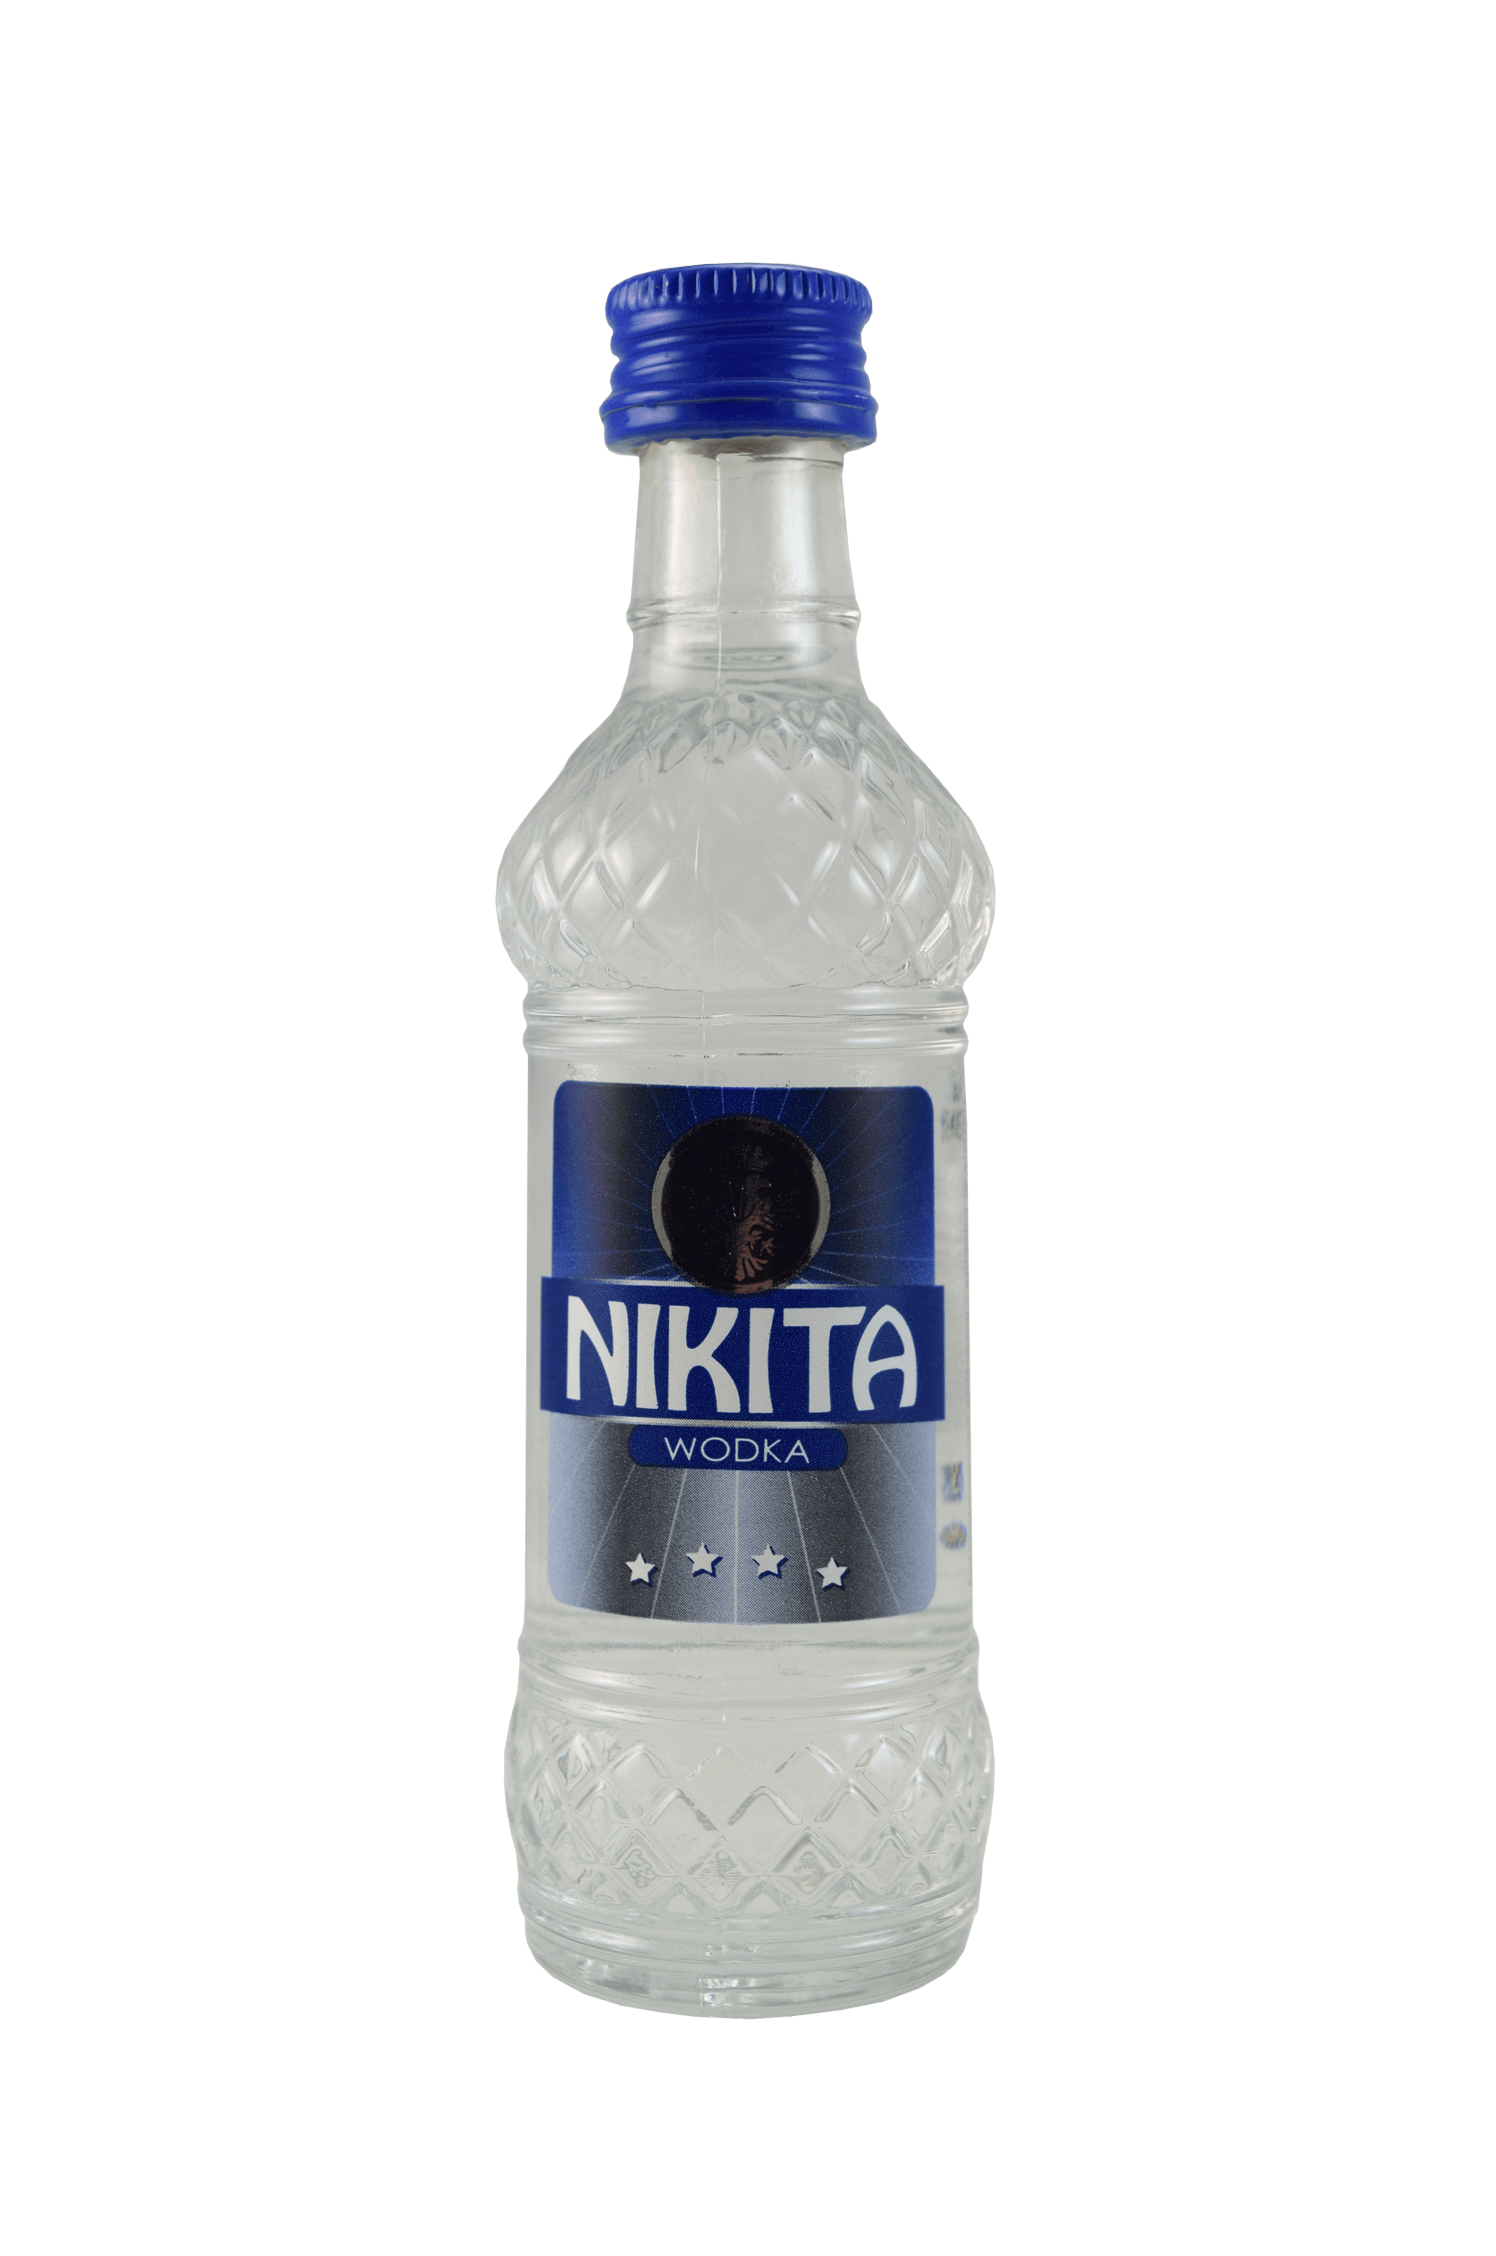 Nikita Vodka